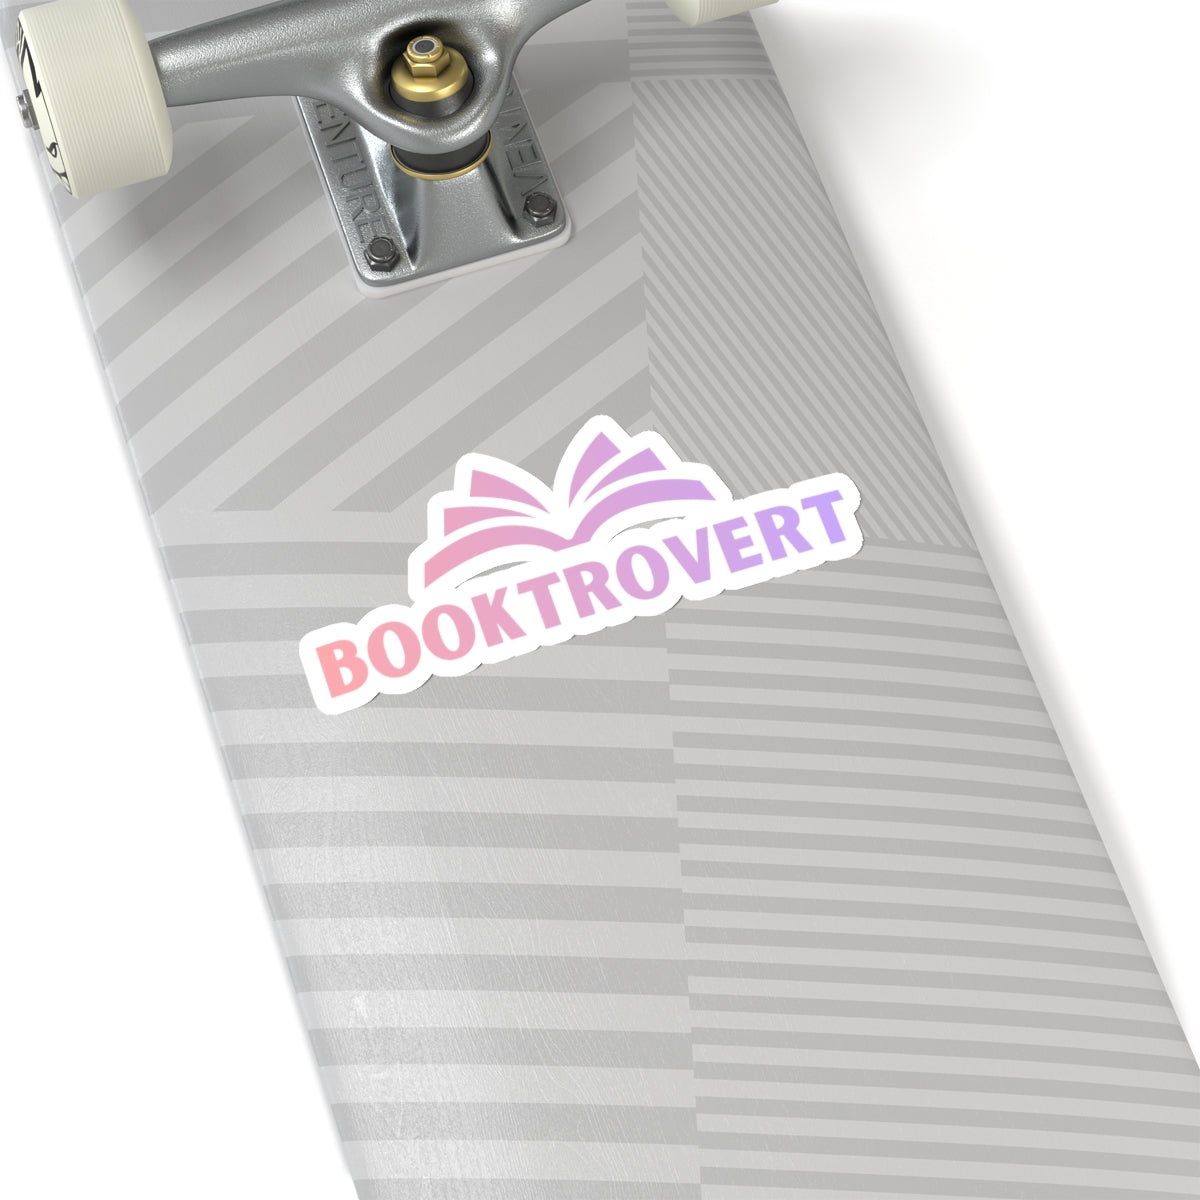 Booktrovert, Booktrovert Kiss-Cut Stickers, Bookish, reader gift, book lover sticker